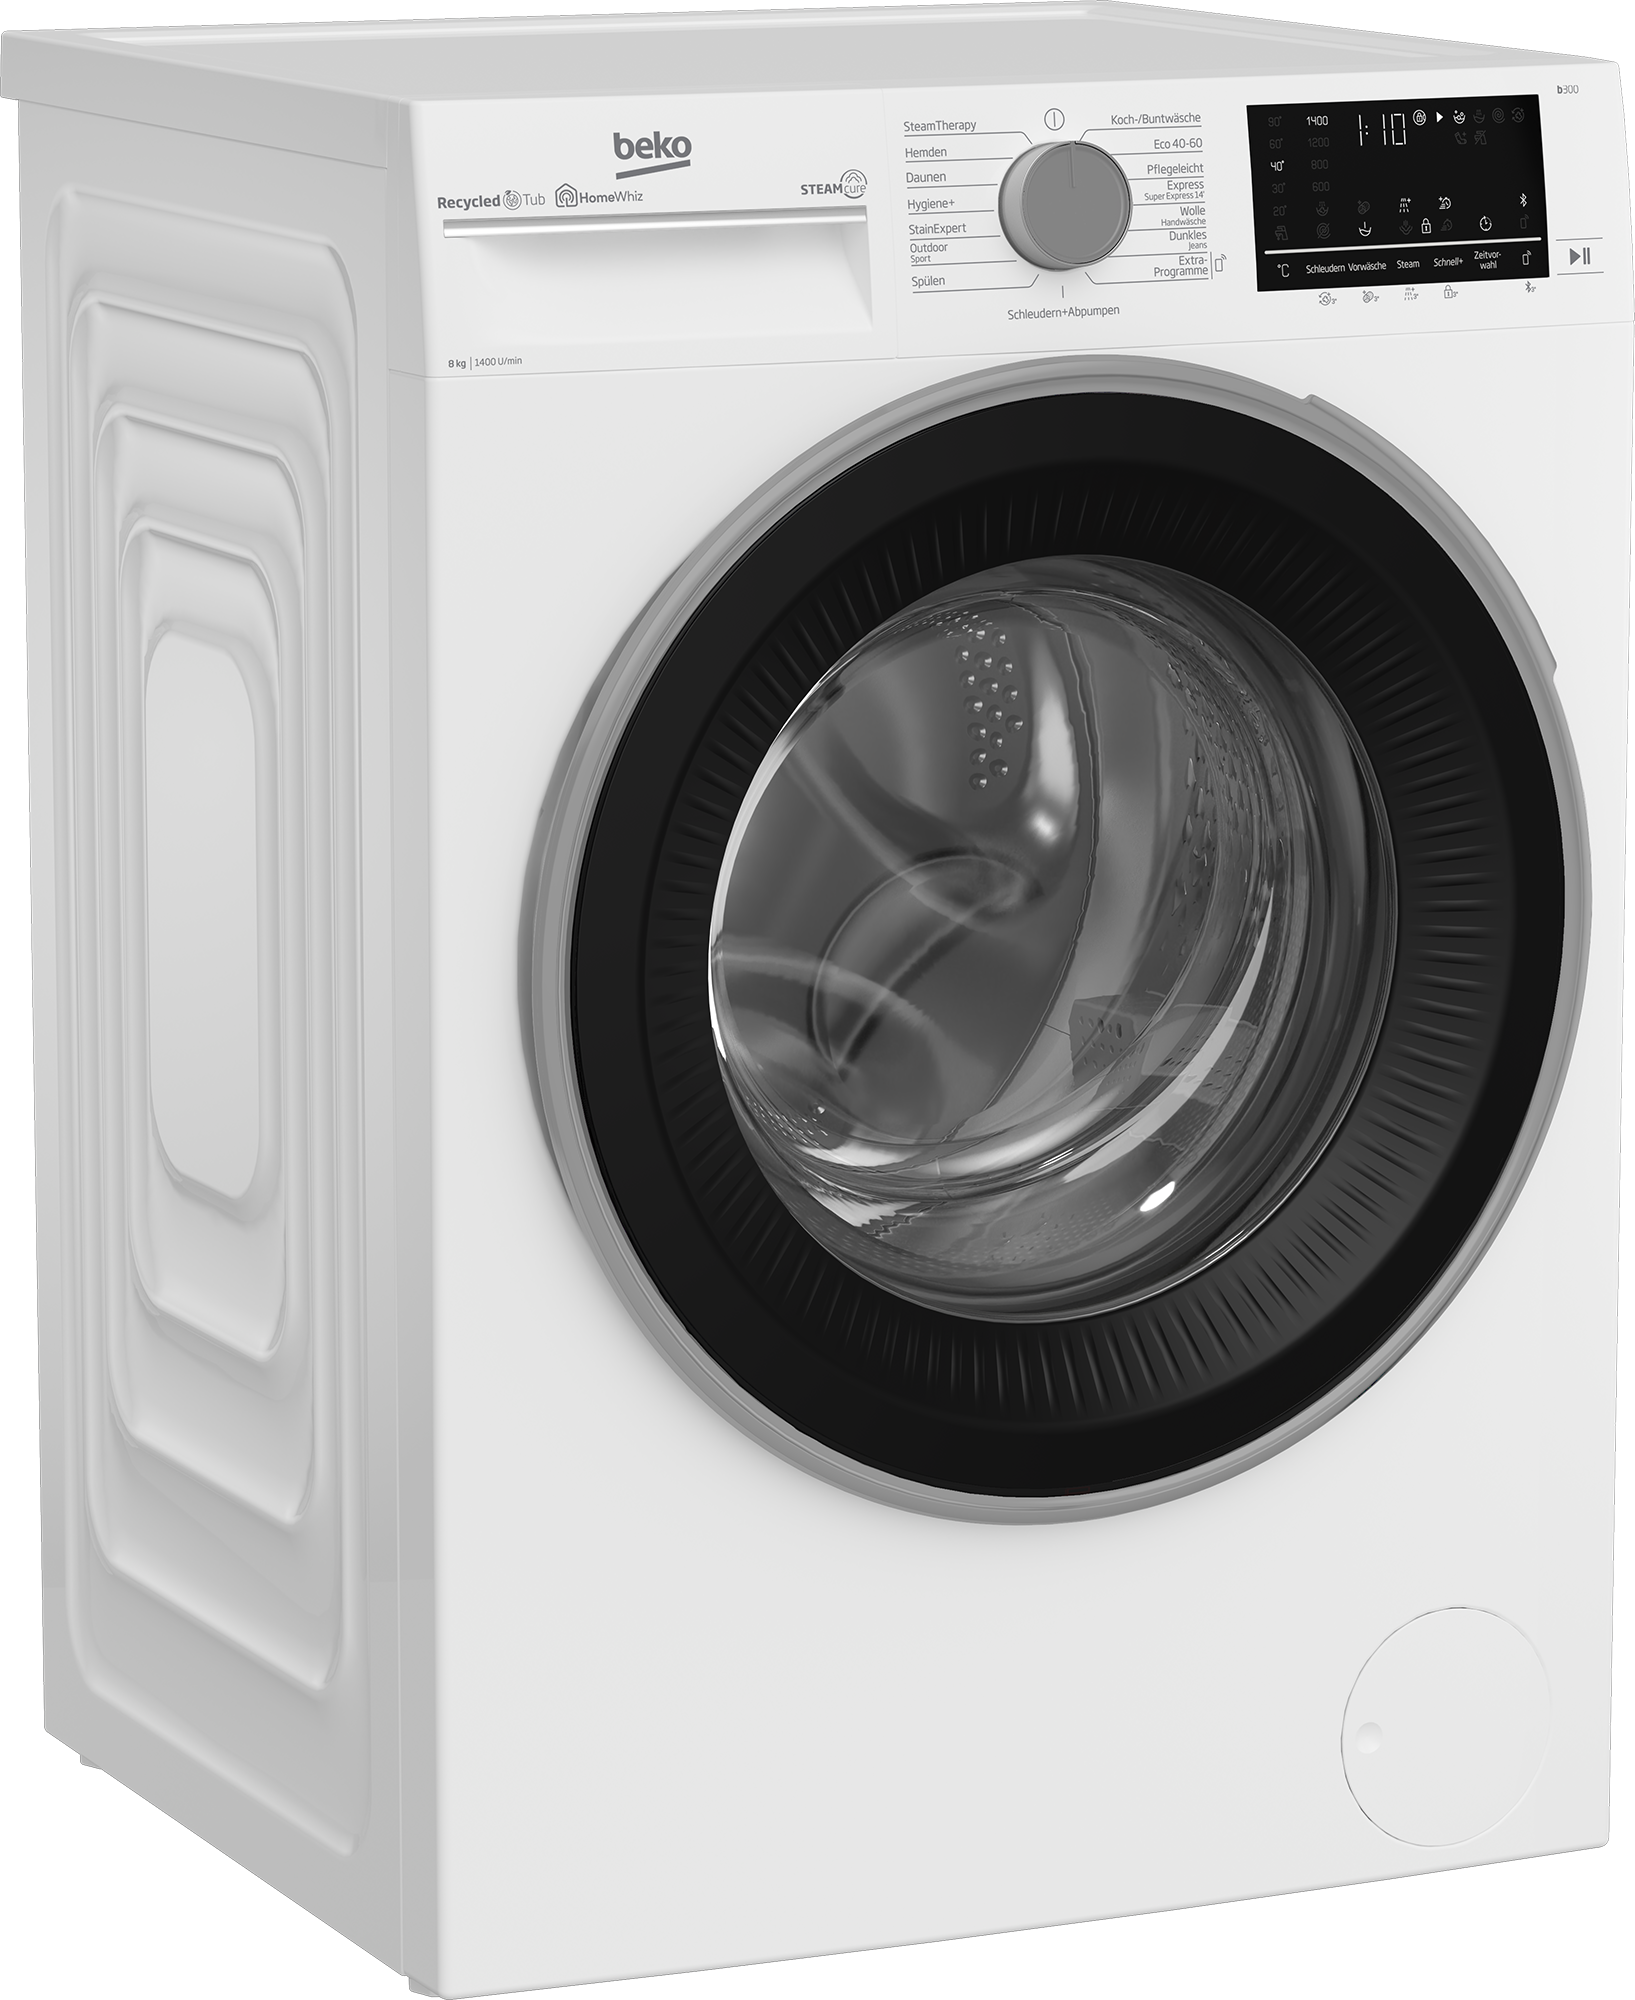 BEKO Waschmaschine, b300, B3WFU58415W1, 8 kg, 1400 U/min, SteamCure - 99% allergenfrei